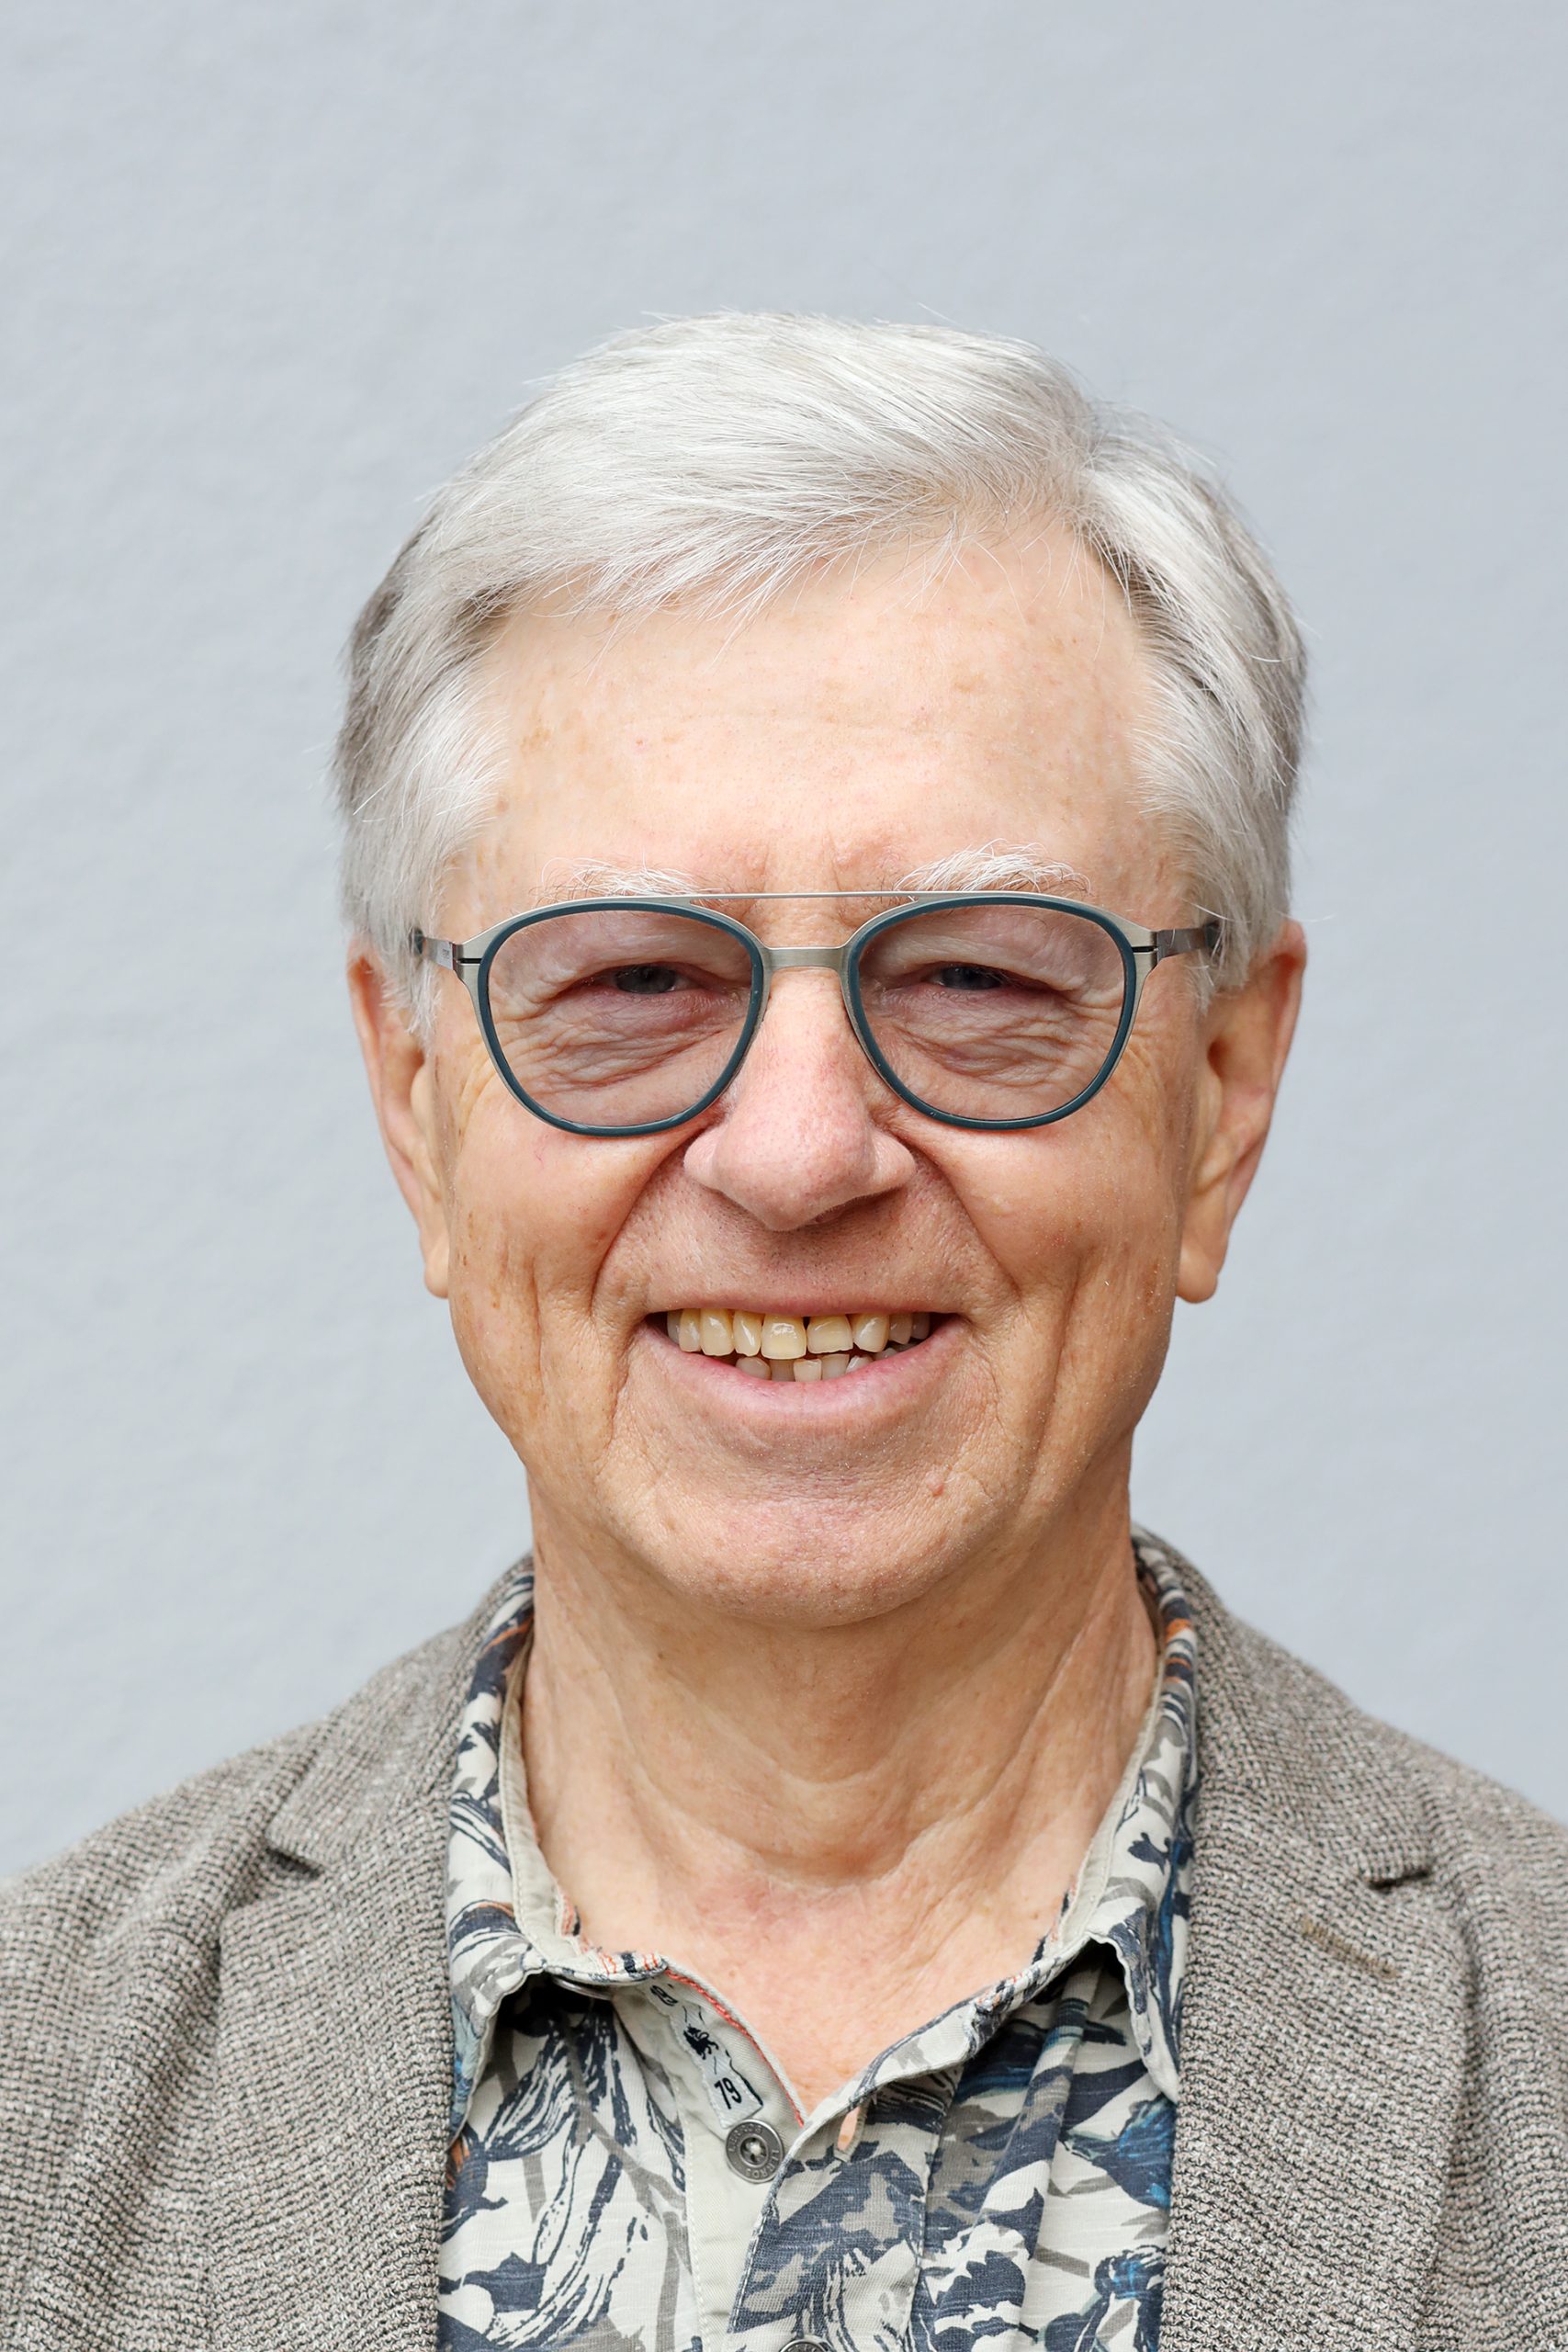 Ehrenobermeister Wolfgang Berger